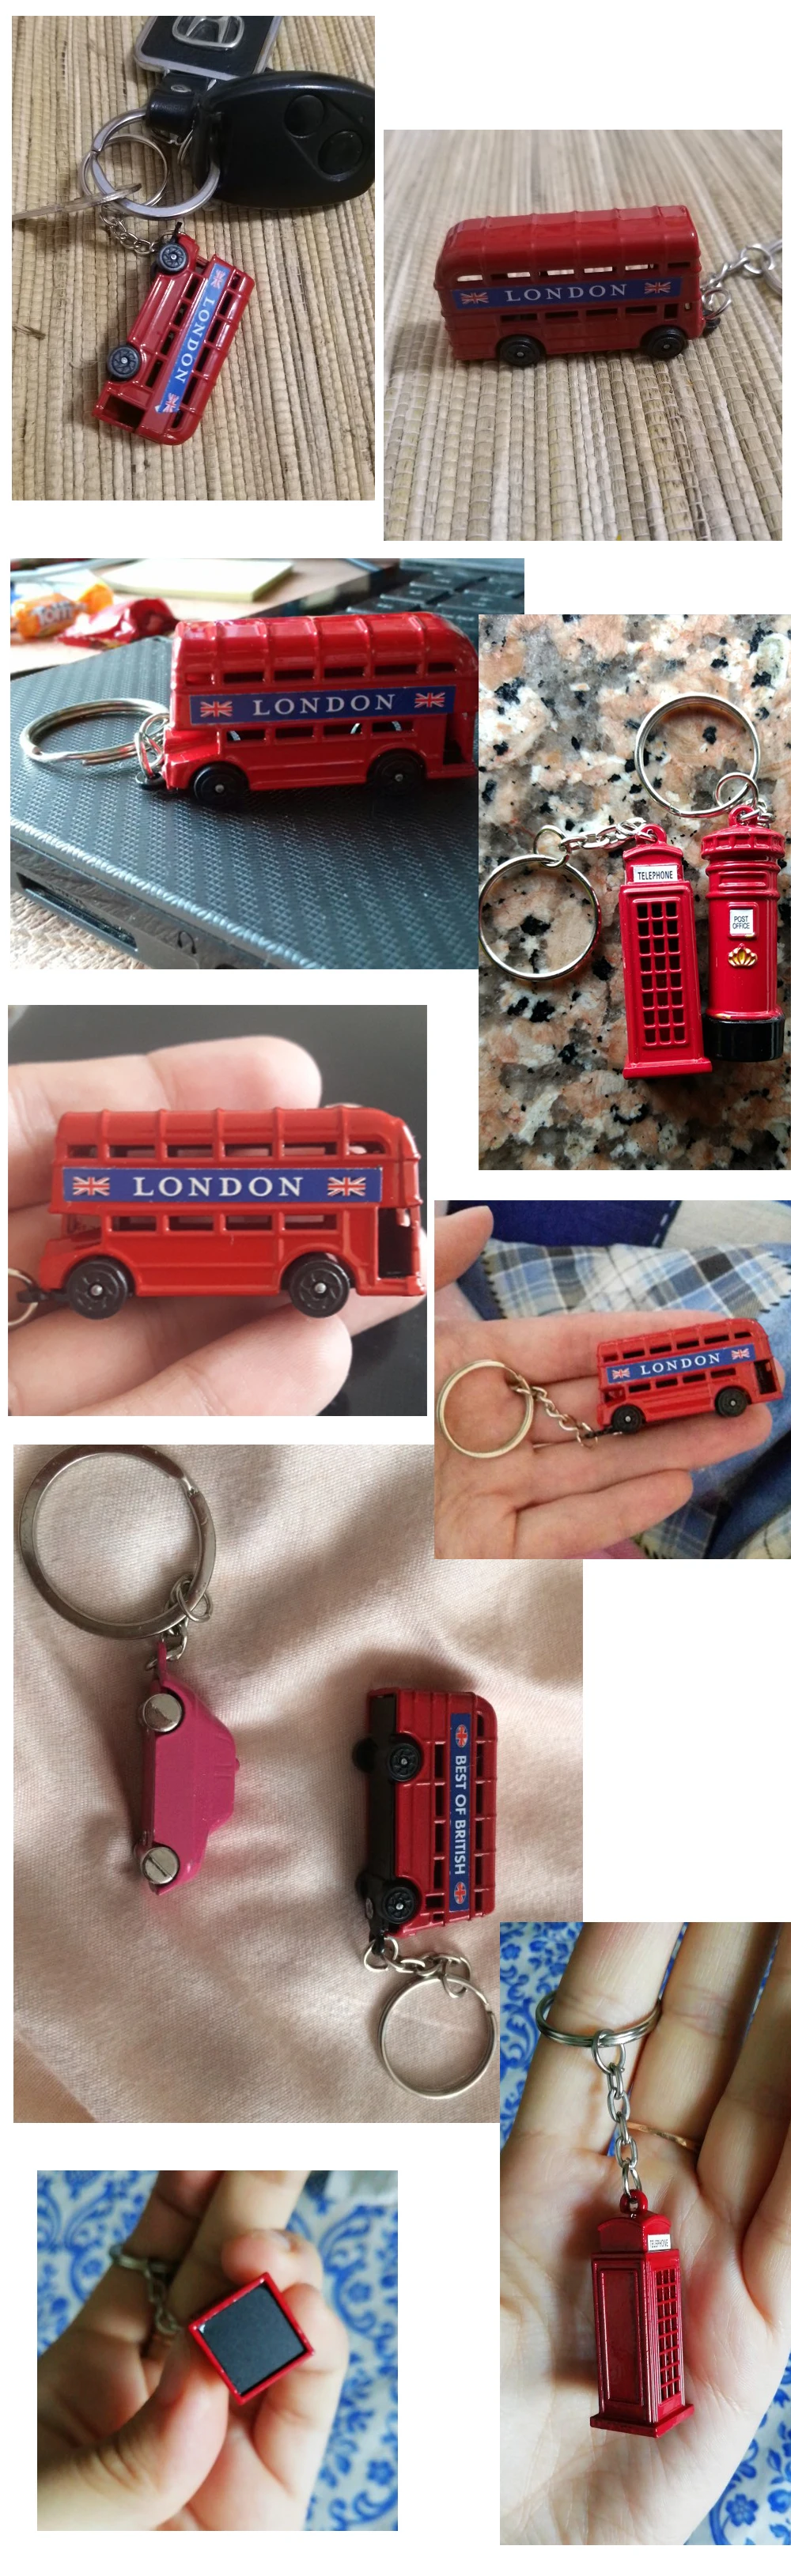 Vicney/Модная коробка для хранения почтовых ящиков, Лондонская автобусная цепочка для ключей, Лондон, красное и синее такси, британский флаг, сувенирный подарок для брелока, кольцо для ключей